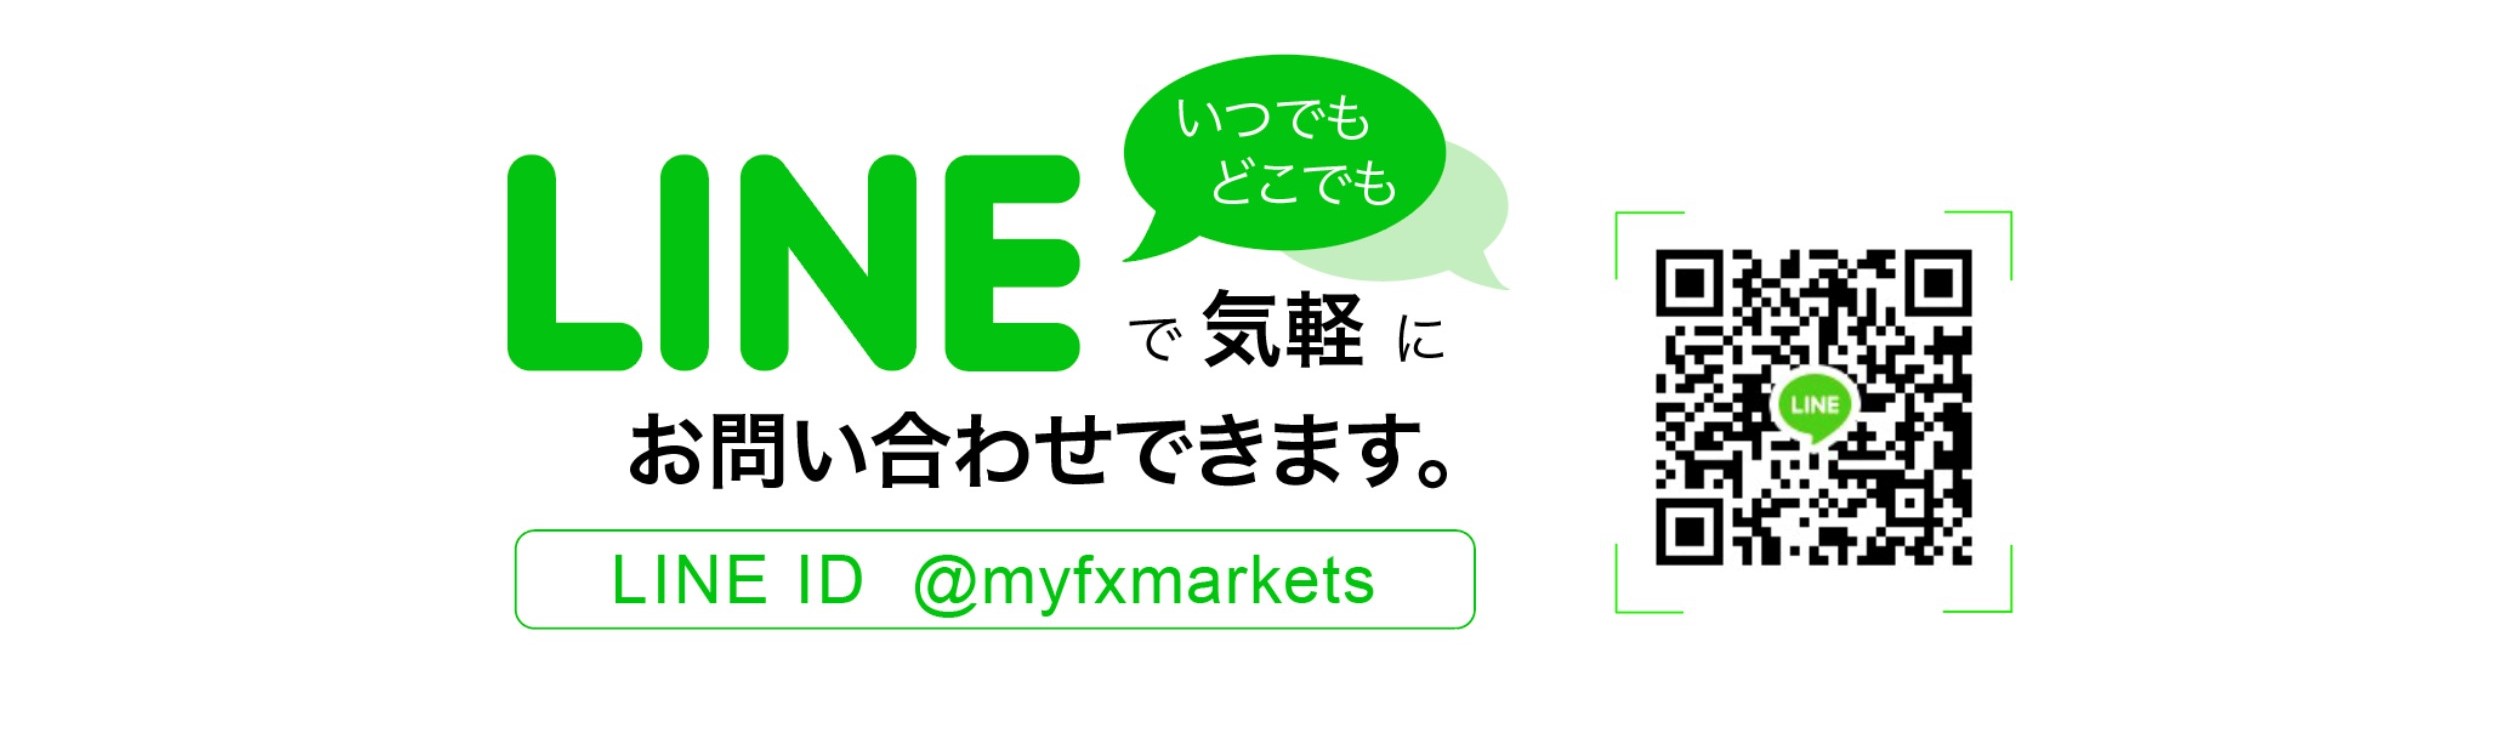 海外FX MYFX MarketsはLINEで気軽にお問い合わせができる